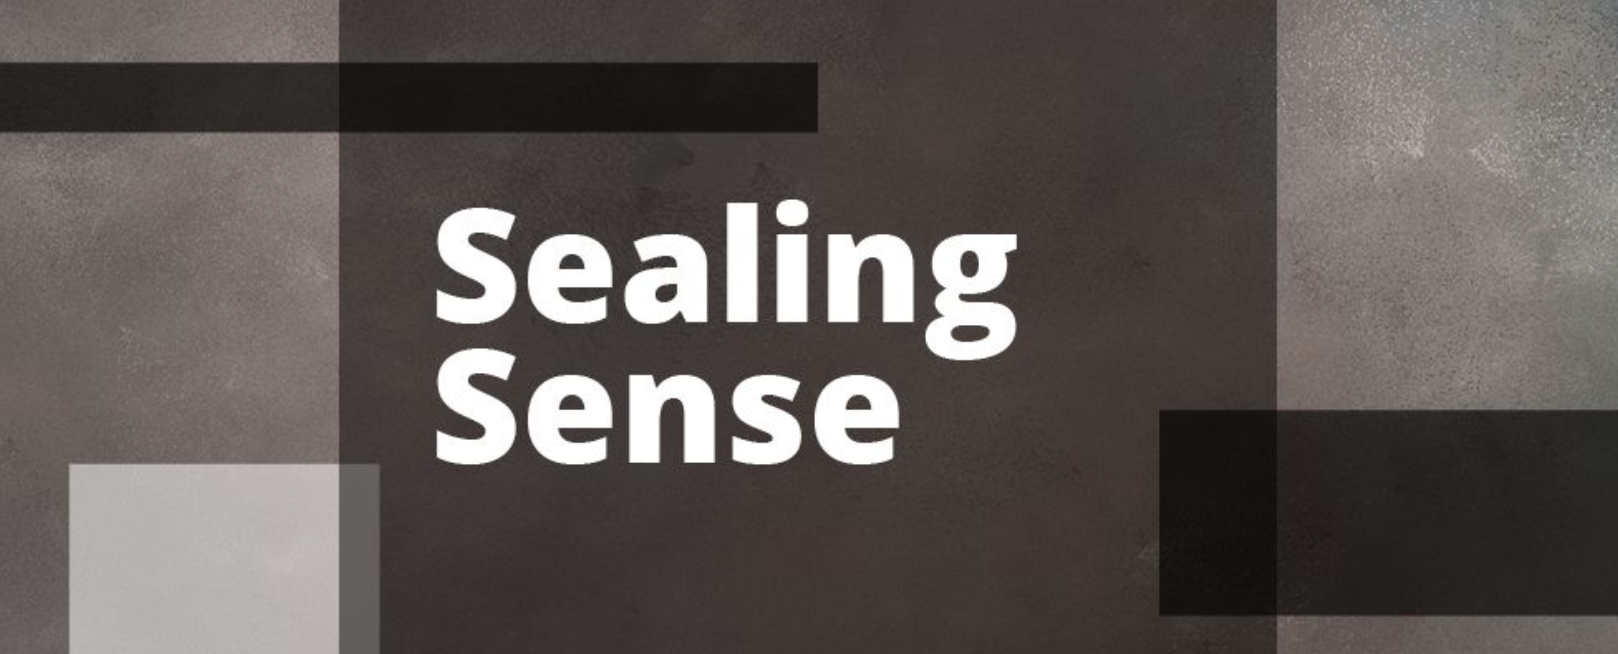 sealing sense